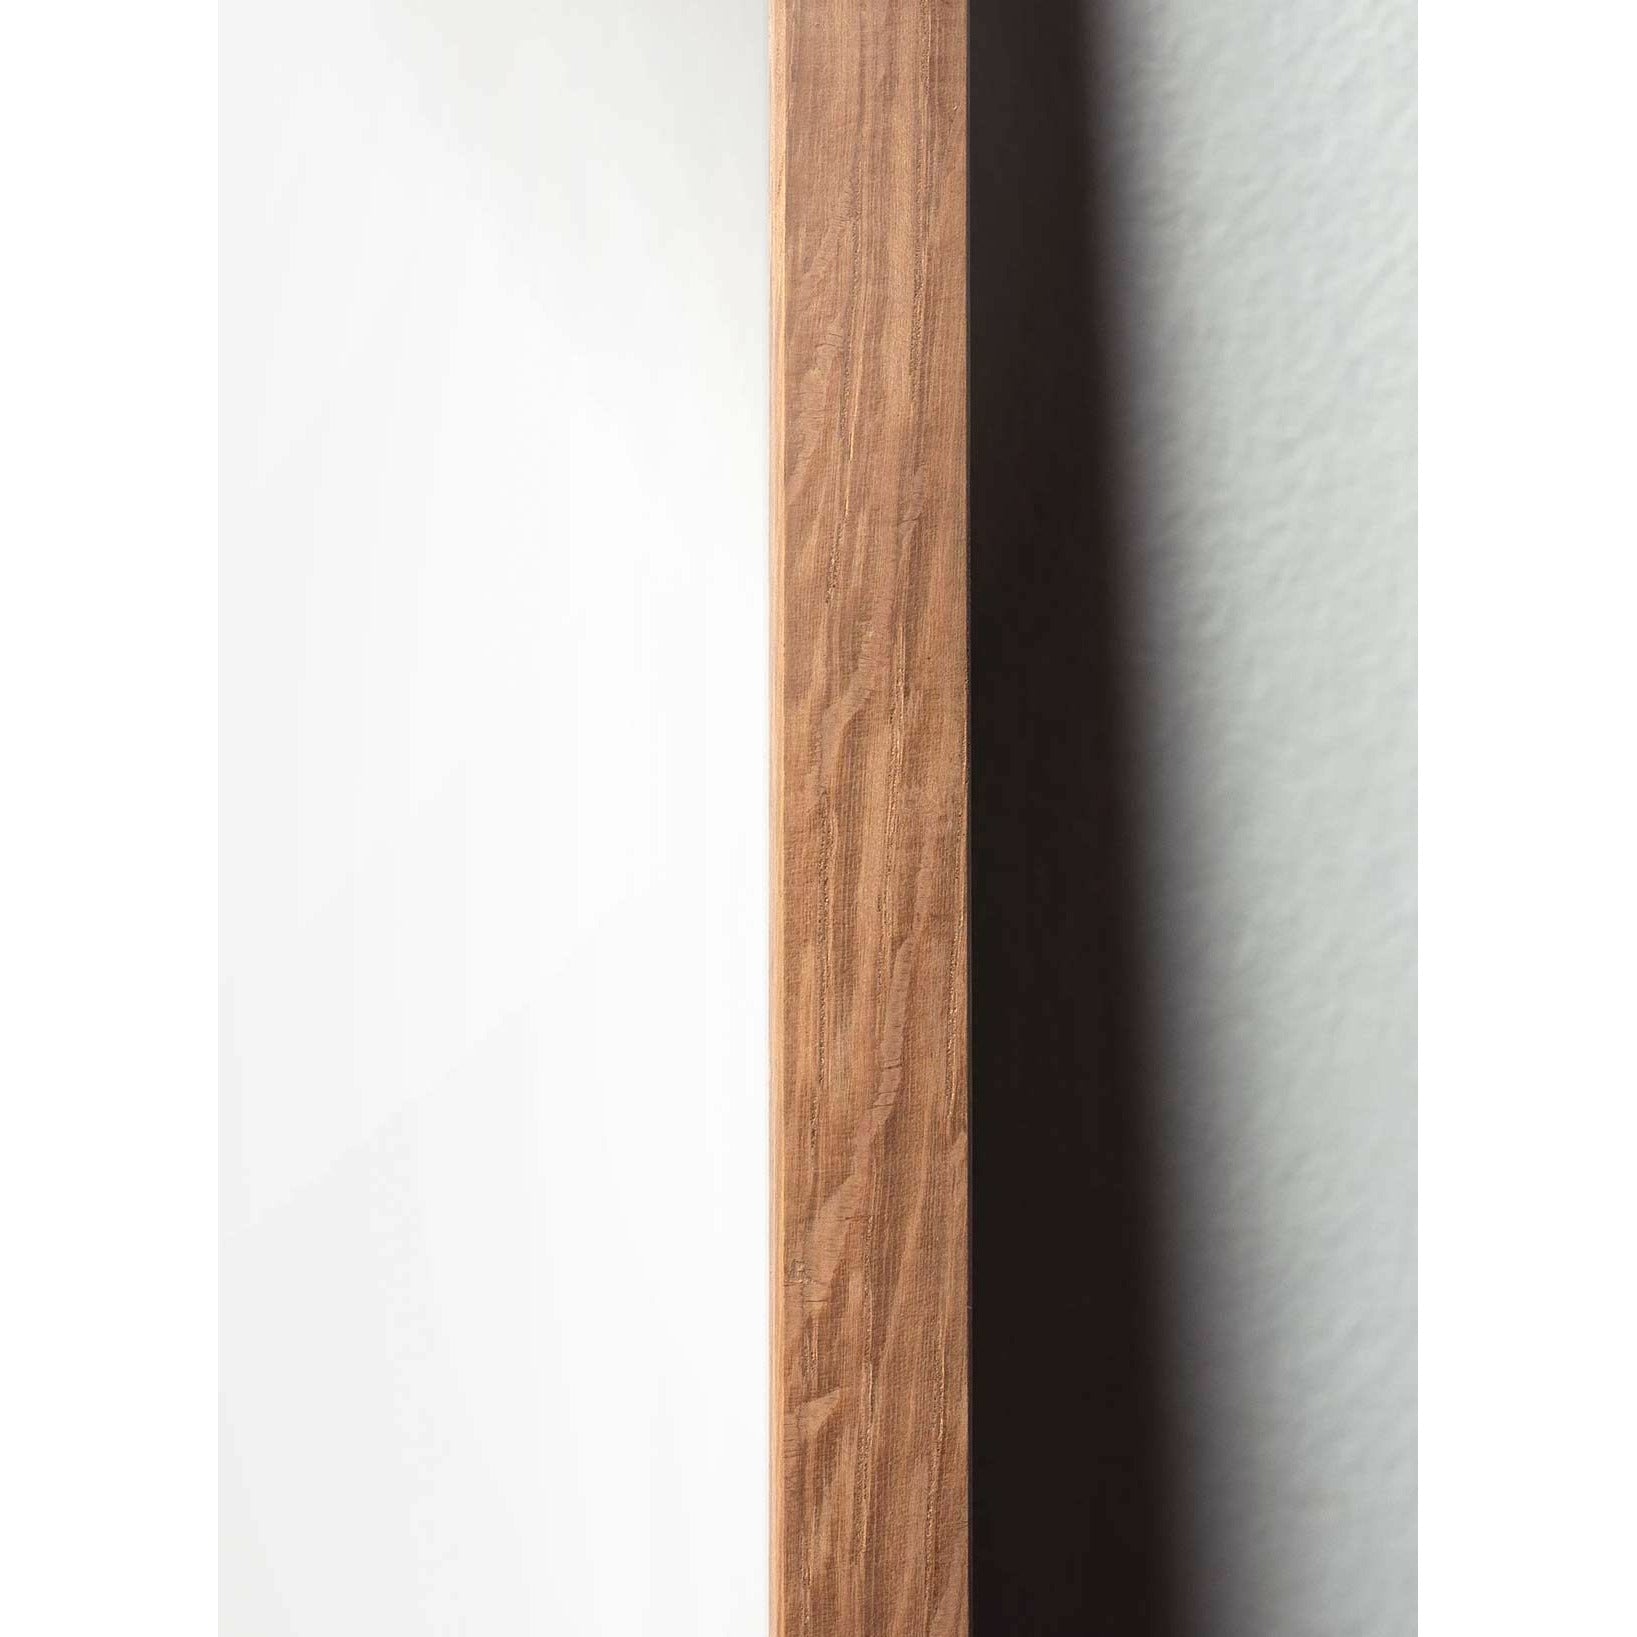 brainchild Munahahmot juliste, kevyestä puusta valmistettu runko 50x70 cm, ruskea